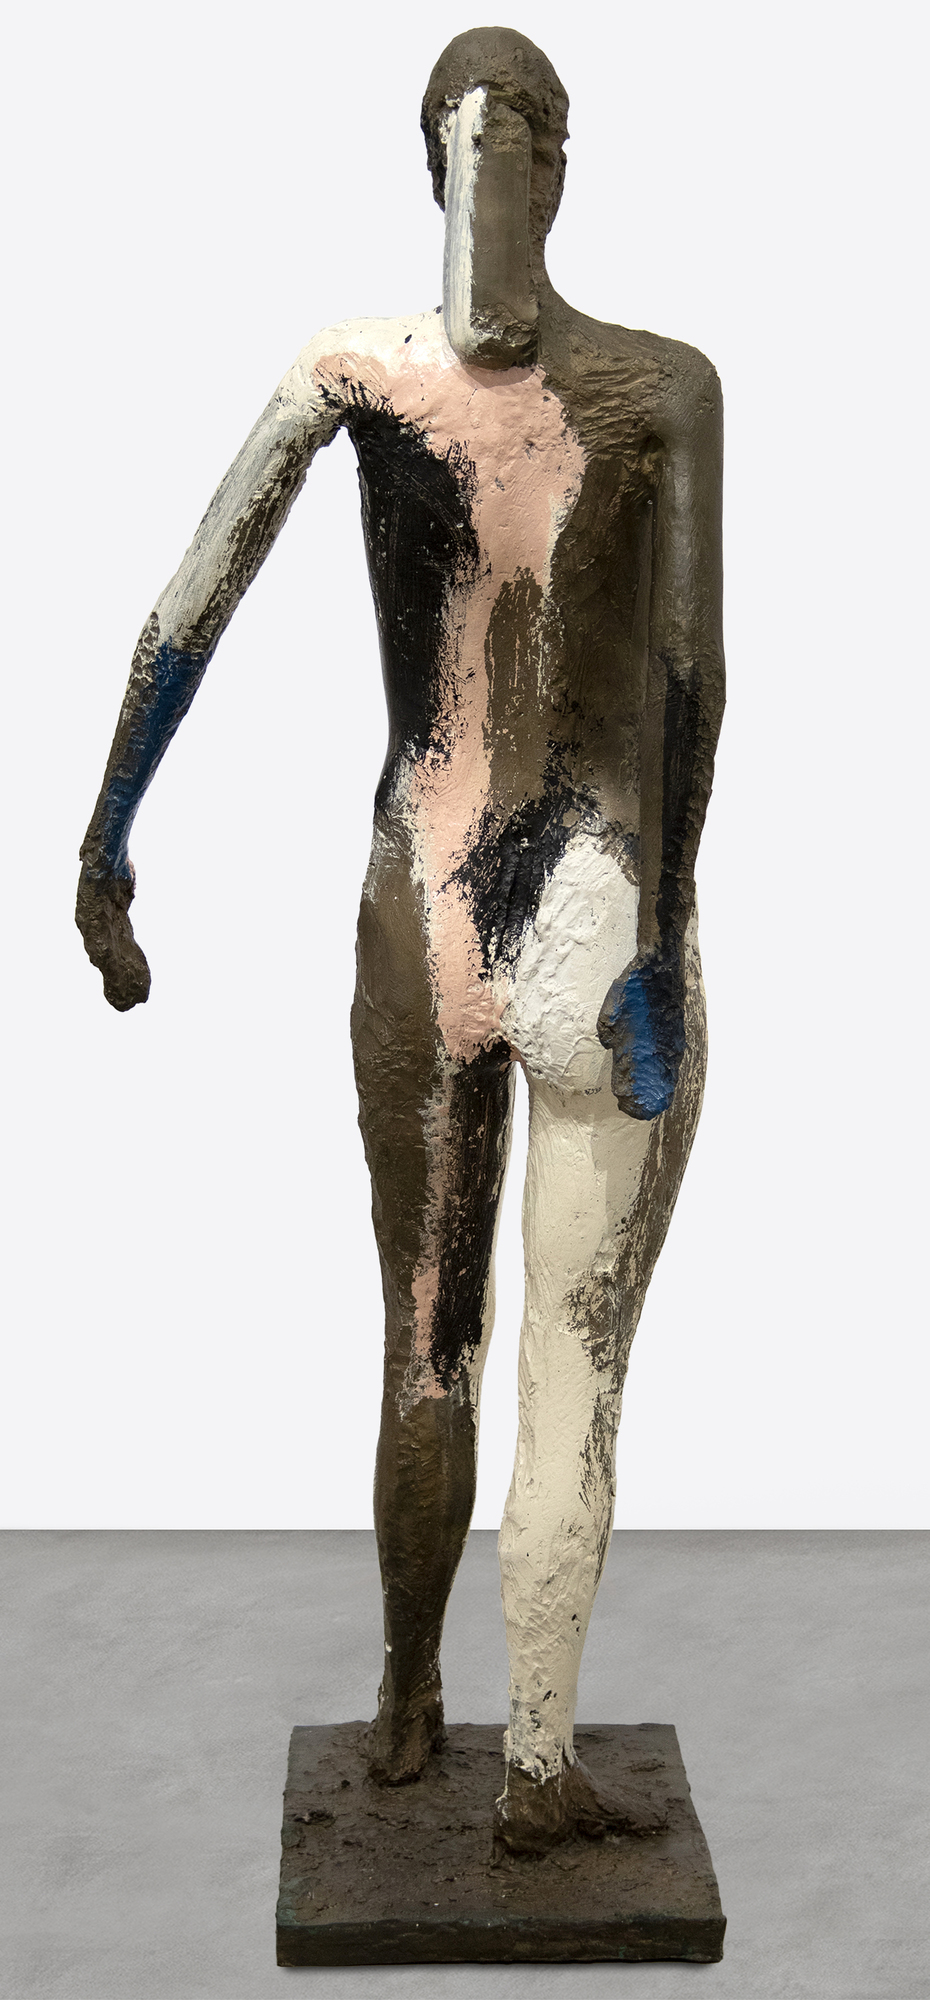 Manuel Neri fue una figura central del movimiento figurativo de la zona de la bahía en la década de 1960. En lugar de las formas abstractas, el grupo hacía hincapié en la emoción a través del poder de la forma humana. La presente obra, &quot;Sin título&quot; (1982), explora la forma femenina a escala real.  Neri prefirió trabajar con una sola modelo a lo largo de sus 60 años de carrera, Maria Julia Klimenko. La ausencia de un rostro en muchas de las esculturas añade un elemento de misterio y ambigüedad. El centro de la composición en &quot;Sin título&quot; es la estructura y la forma de la figura.  Manuel Neri está representado en numerosas colecciones de museos de todo el mundo, como la Addison Gallery/Phillips Academy; la Colección Anderson de la Universidad de Stanford; el Instituto de Arte de Chicago; el Centro de Arte Cantor de la Universidad de Stanford; el Museo de Arte de Cincinnati; el Museo de Arte Crocker de Sacramento (California); el Museo de Arte de Denver; el Museo de Arte de El Paso (Texas); los Museos de Bellas Artes de San Francisco; los Museos de Arte de la Universidad de Harvard; el Museo y Jardín de Esculturas Hirshhorn de Washington, D.C.; Honolulu Museum of Art, The Metropolitan Museum of Art, Nueva York y la National Gallery of Art, Washington, DC.